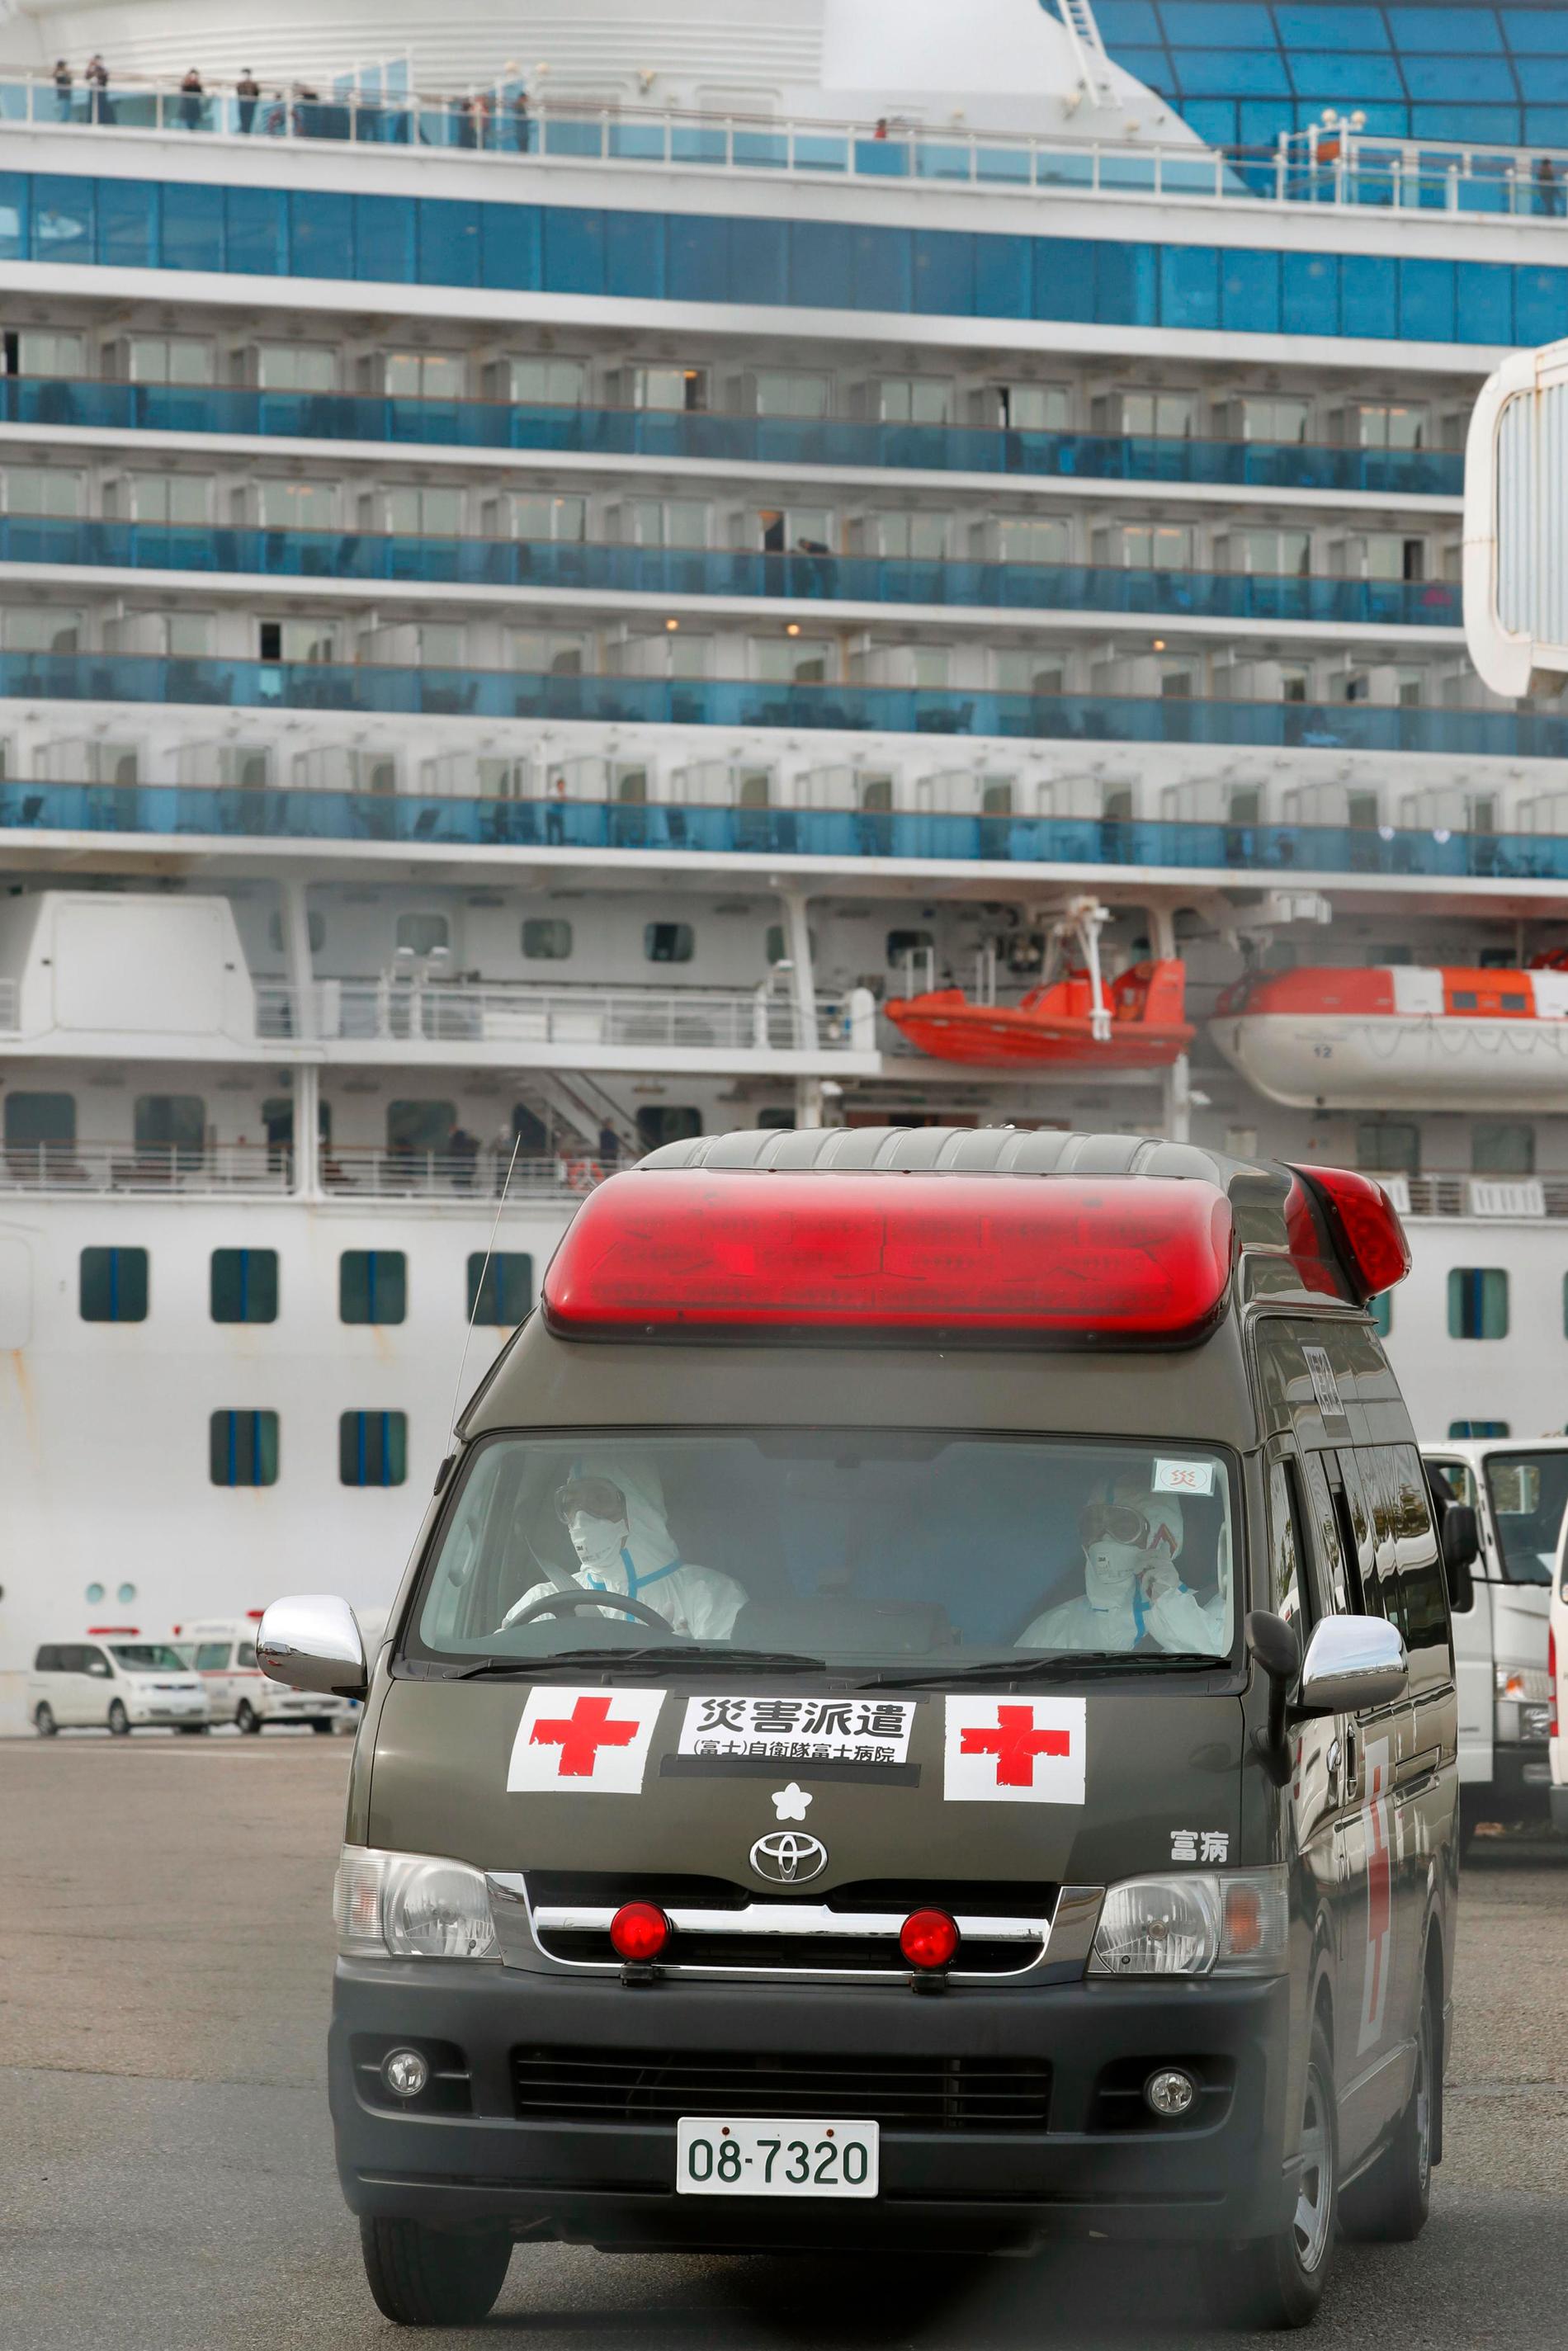 En ambulans lämnar kajen i Yokohama, där Diamond Princess, ligger isolerad.